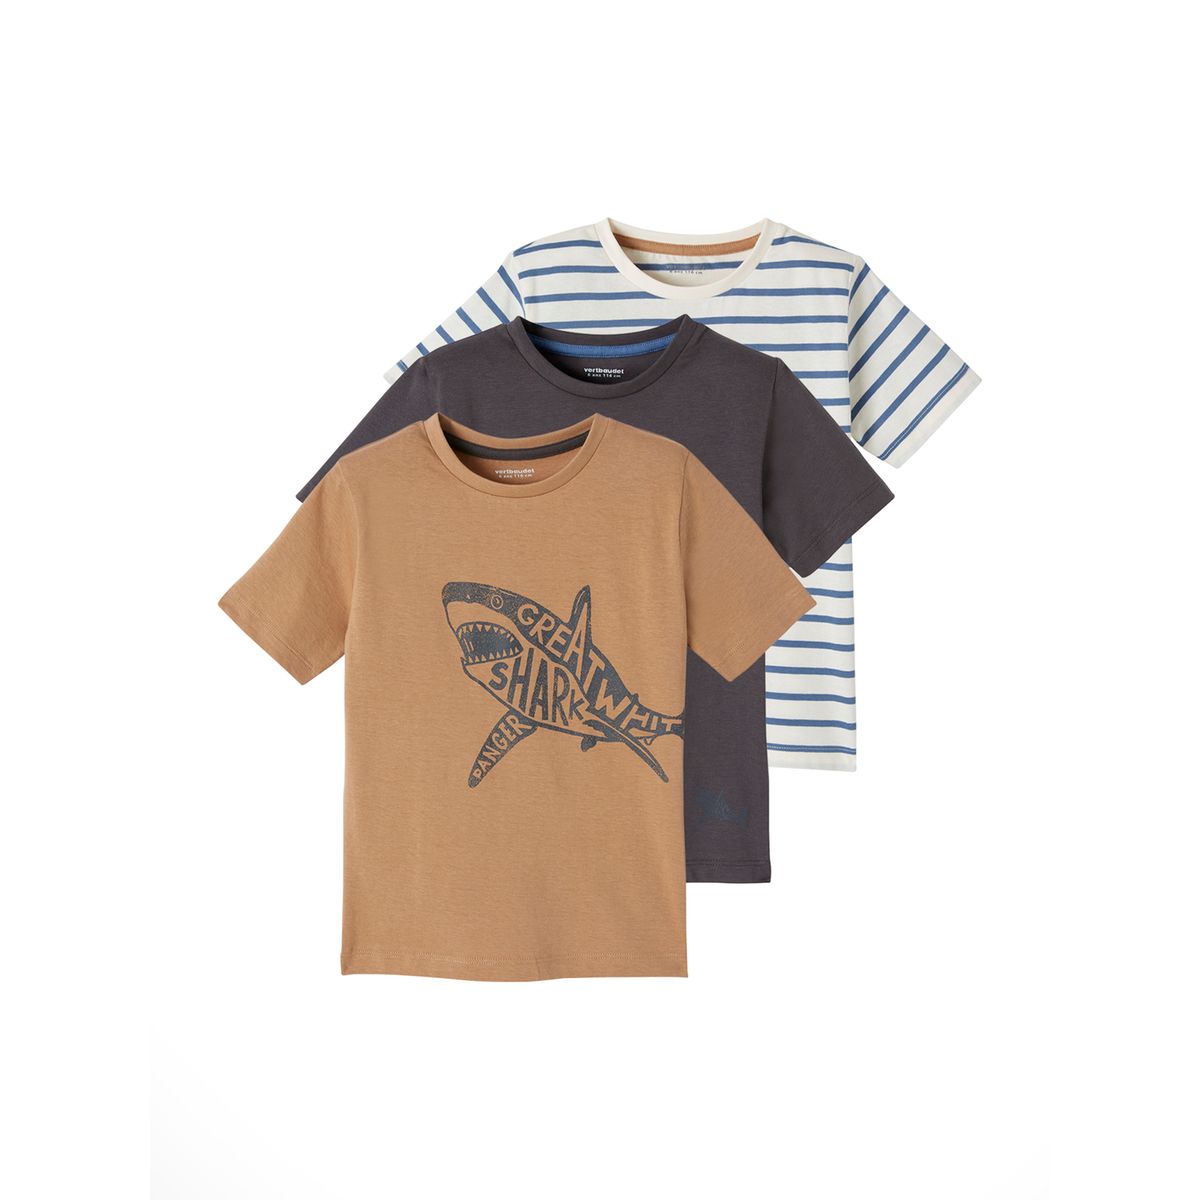 Tshirt motif graphique skate sur la poitrine La Redoute Garçon Vêtements Tops & T-shirts T-shirts Manches courtes 